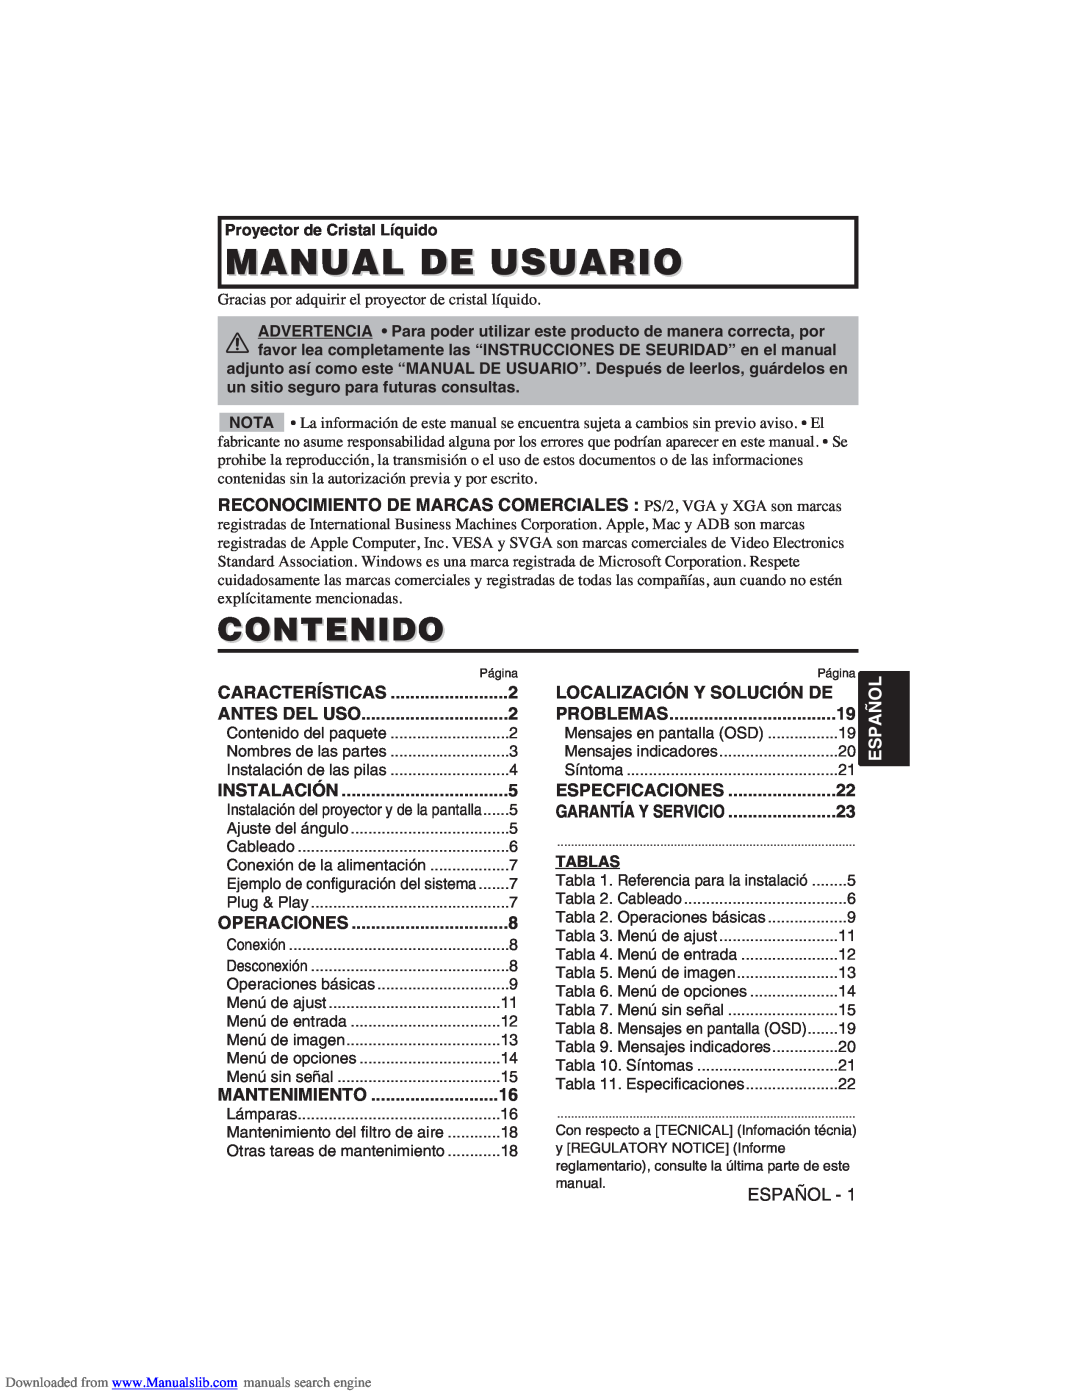 Hitachi CP-X275W user manual Manual De Usuario, Contenido, Localización Y Solución De, Español 